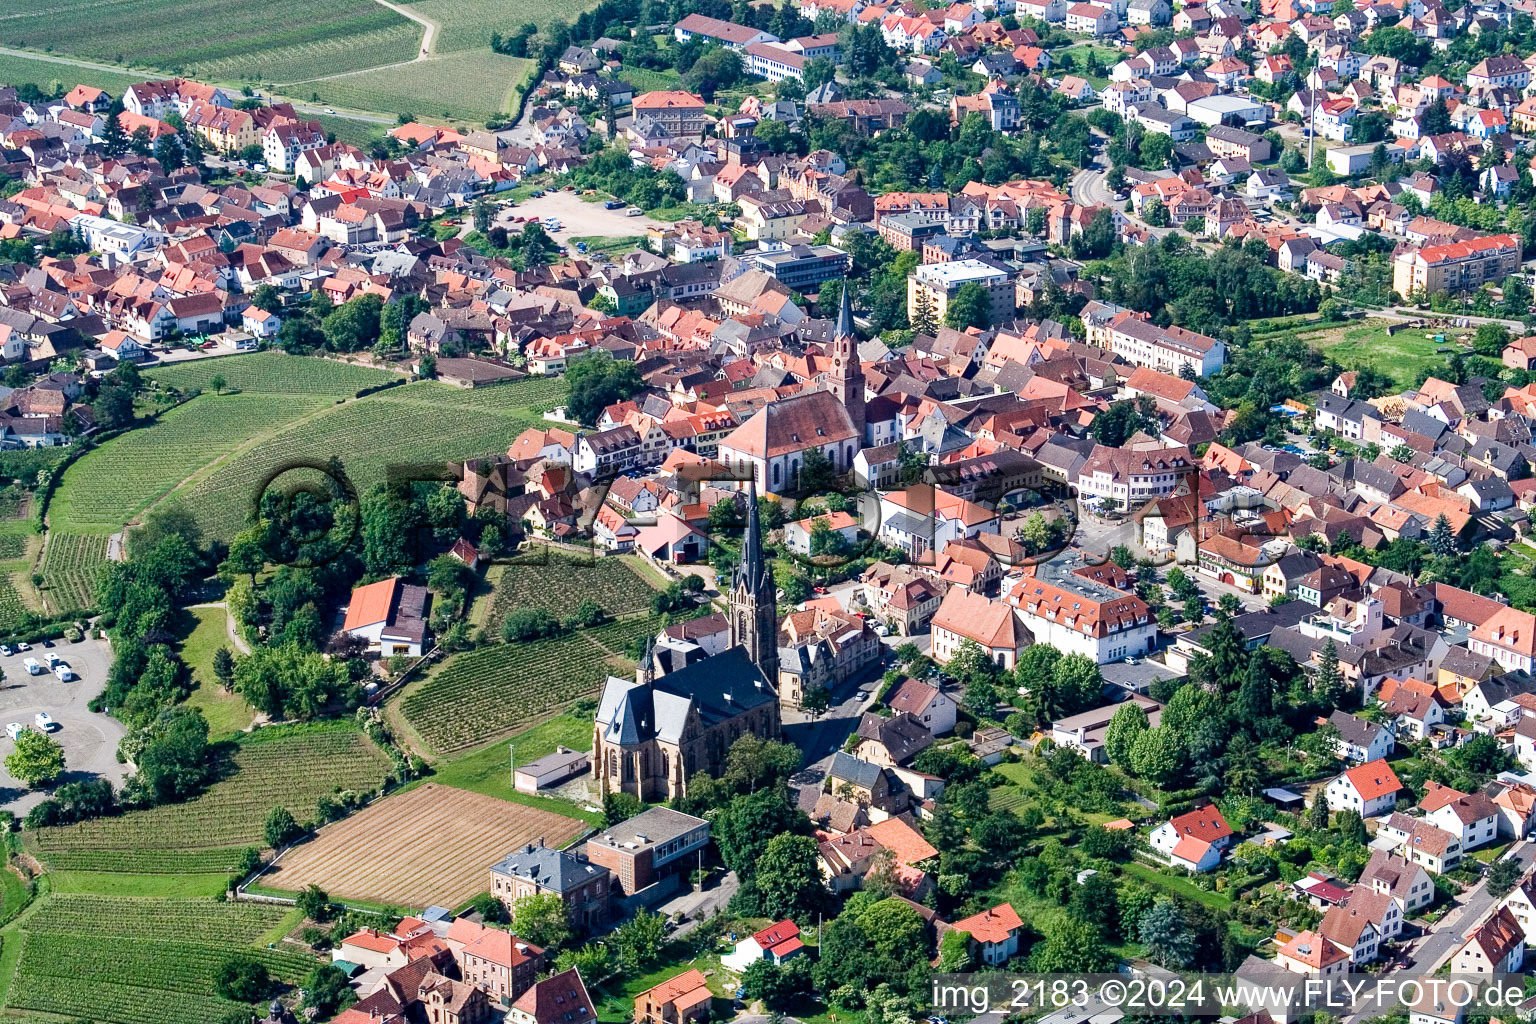 Vue aérienne de Deux bâtiments religieux au centre du village à Maikammer dans le département Rhénanie-Palatinat, Allemagne